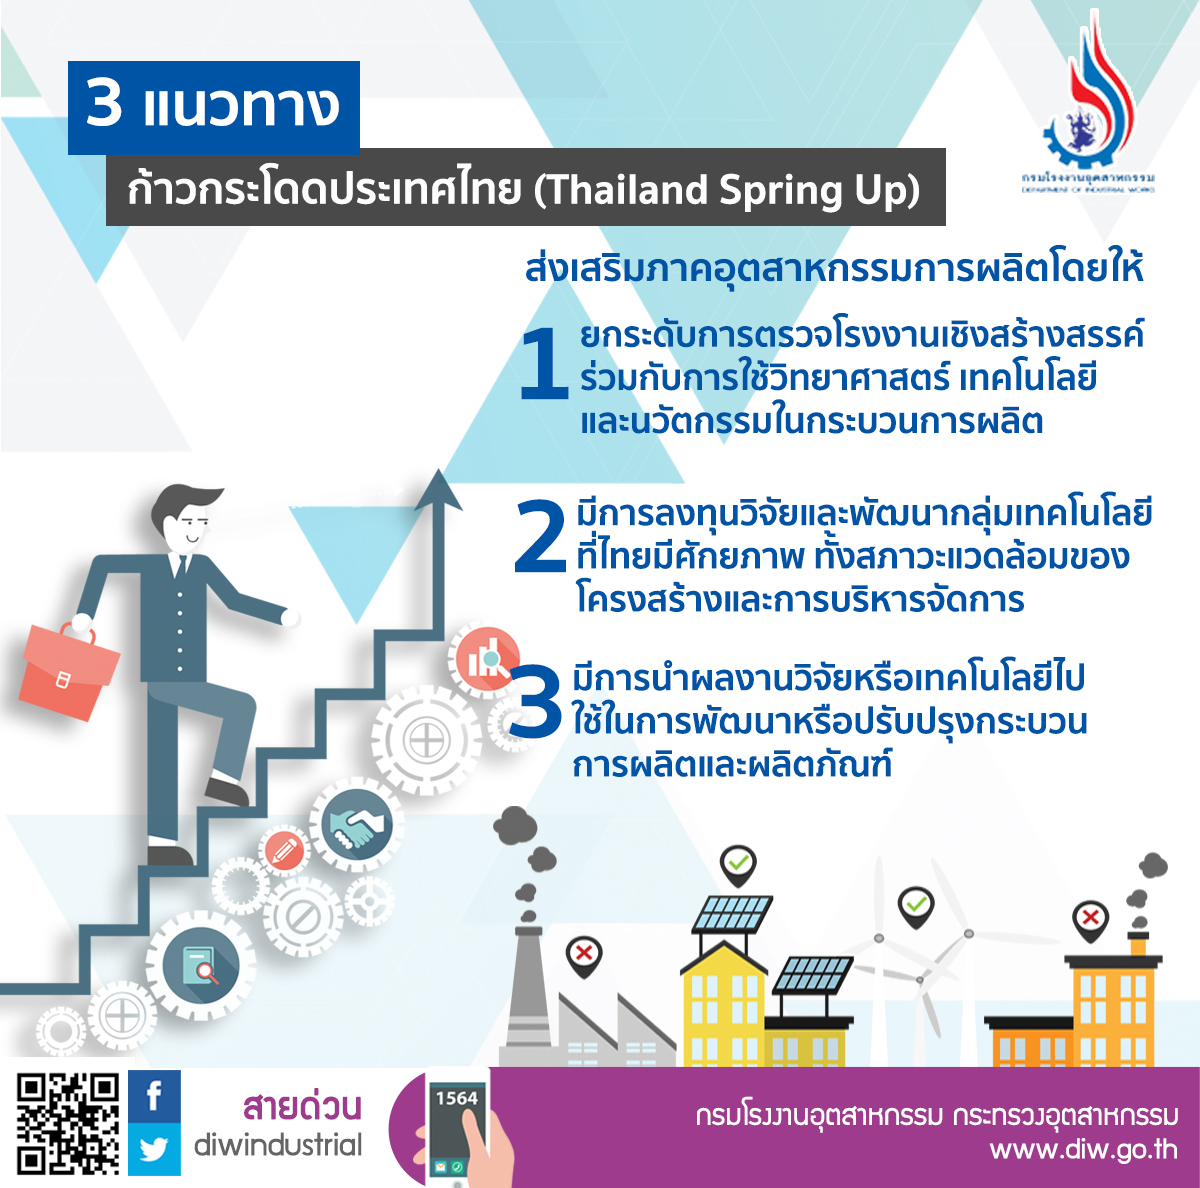 3 แนวทาง ก้าวกระโดดประเทศไทย (Thailand Spring up)